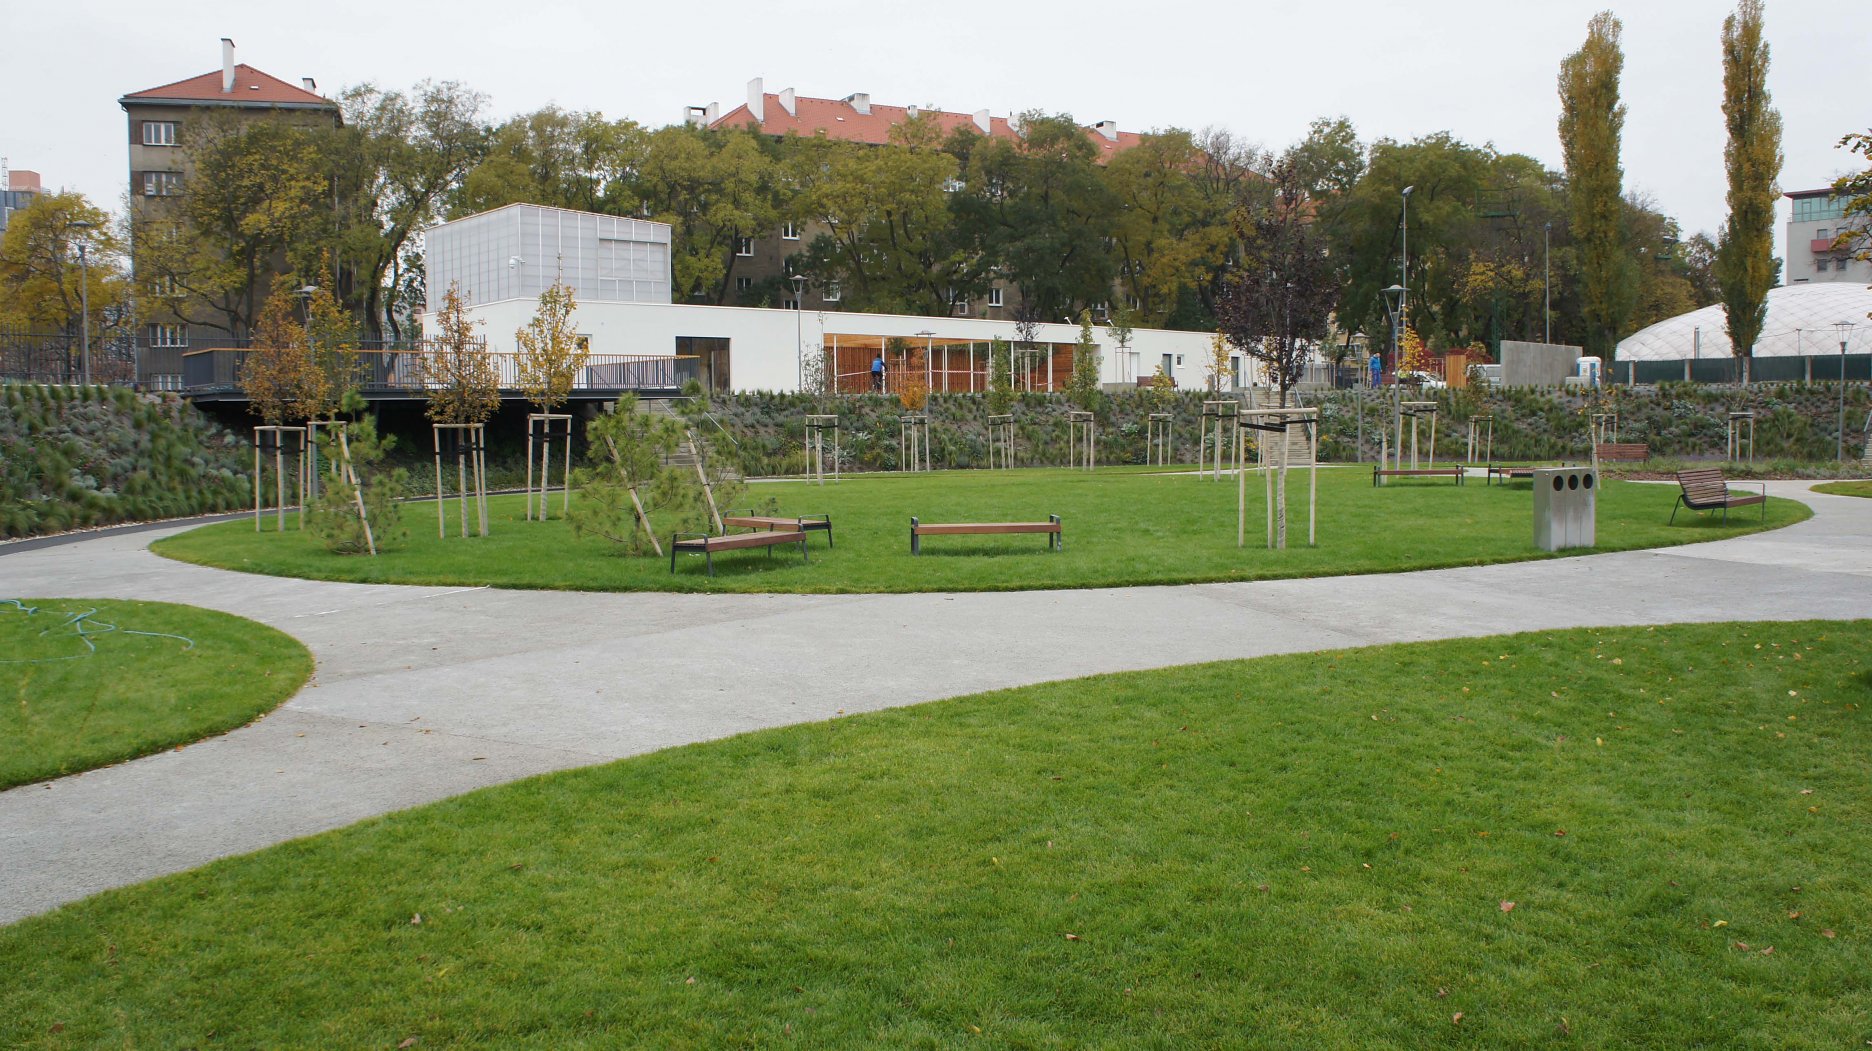 Dolný priestor parku je skôr “pomalší”, typický svojou bohatou vzrastlou zeleňou a zelenými plochami pre hry a relax.